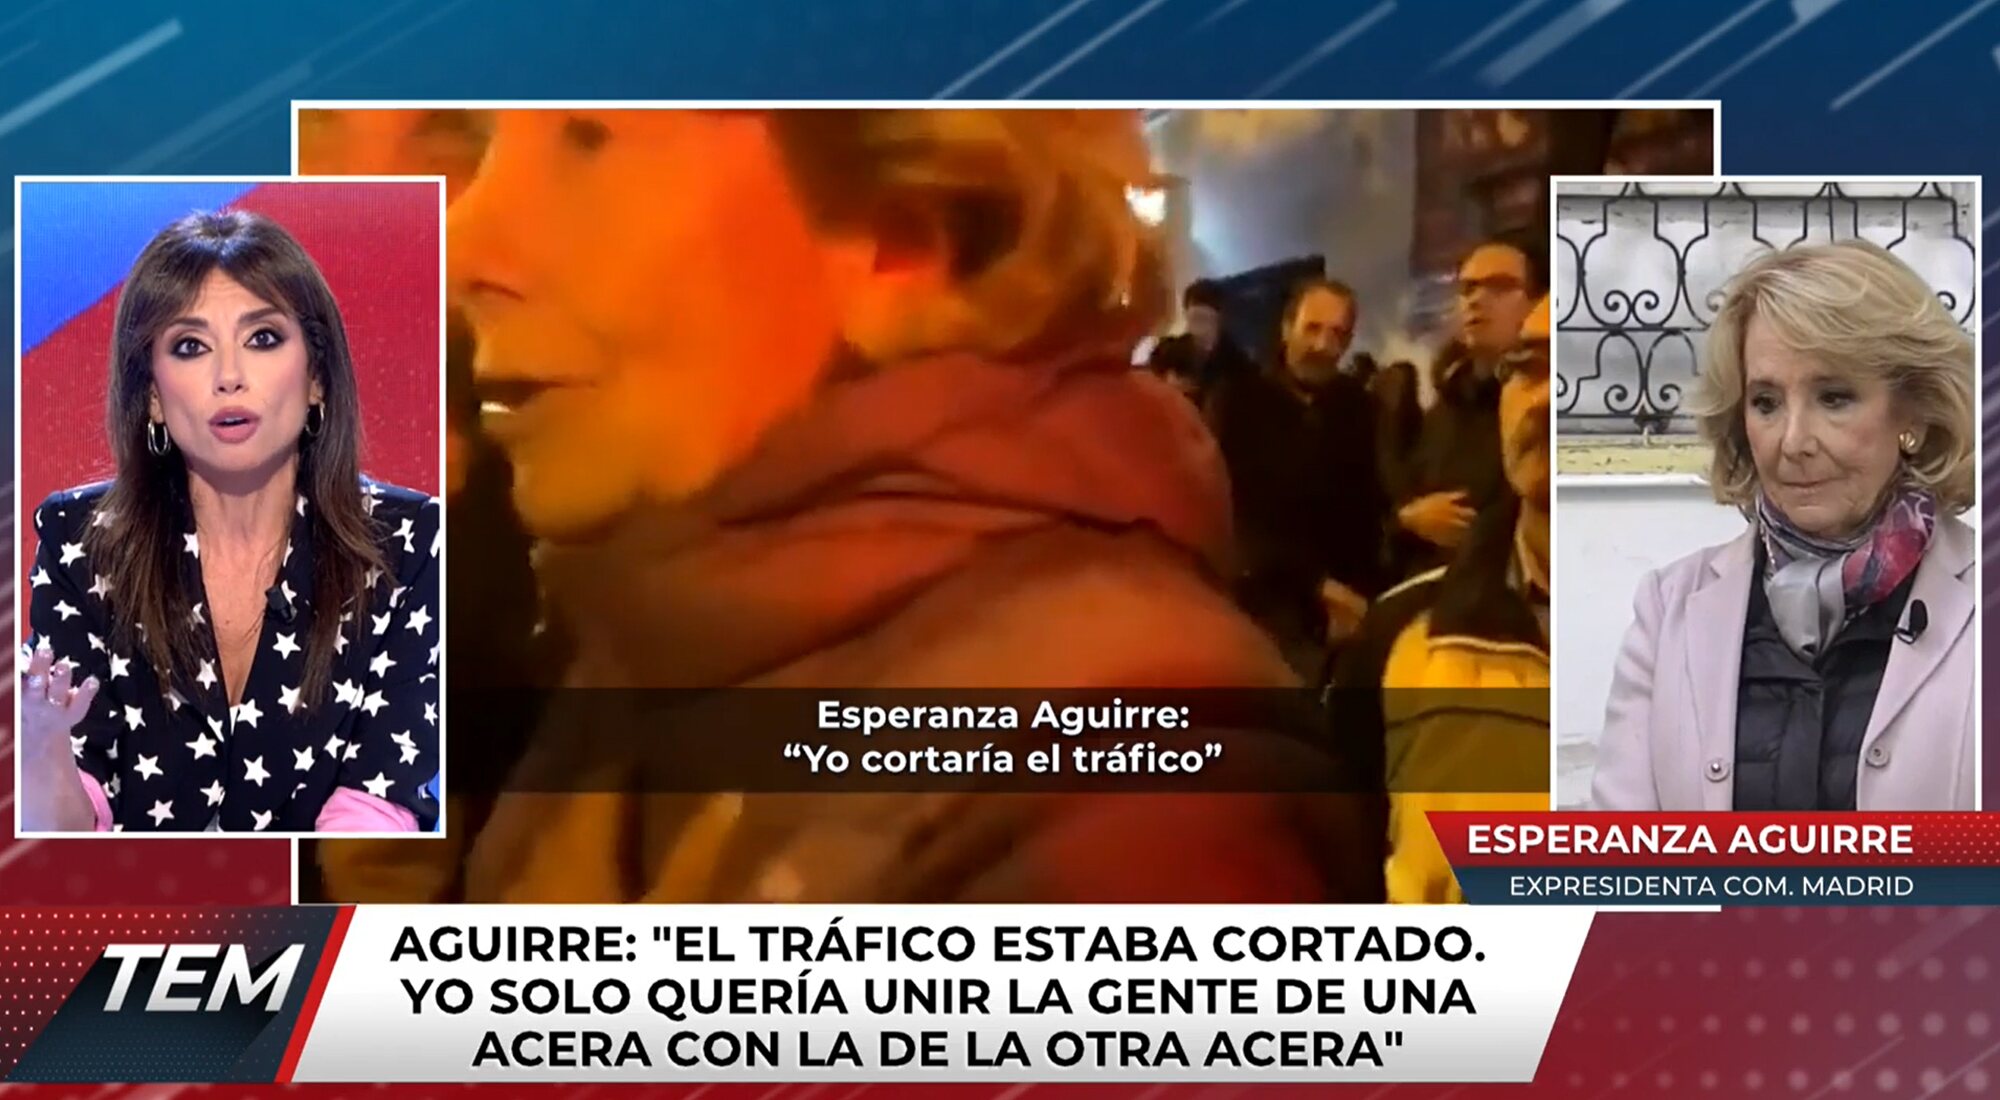 Marta Flich y Esperanza Aguirre, enfrentadas en 'Todo es mentira' a raíz de las protestas contra el PSOE